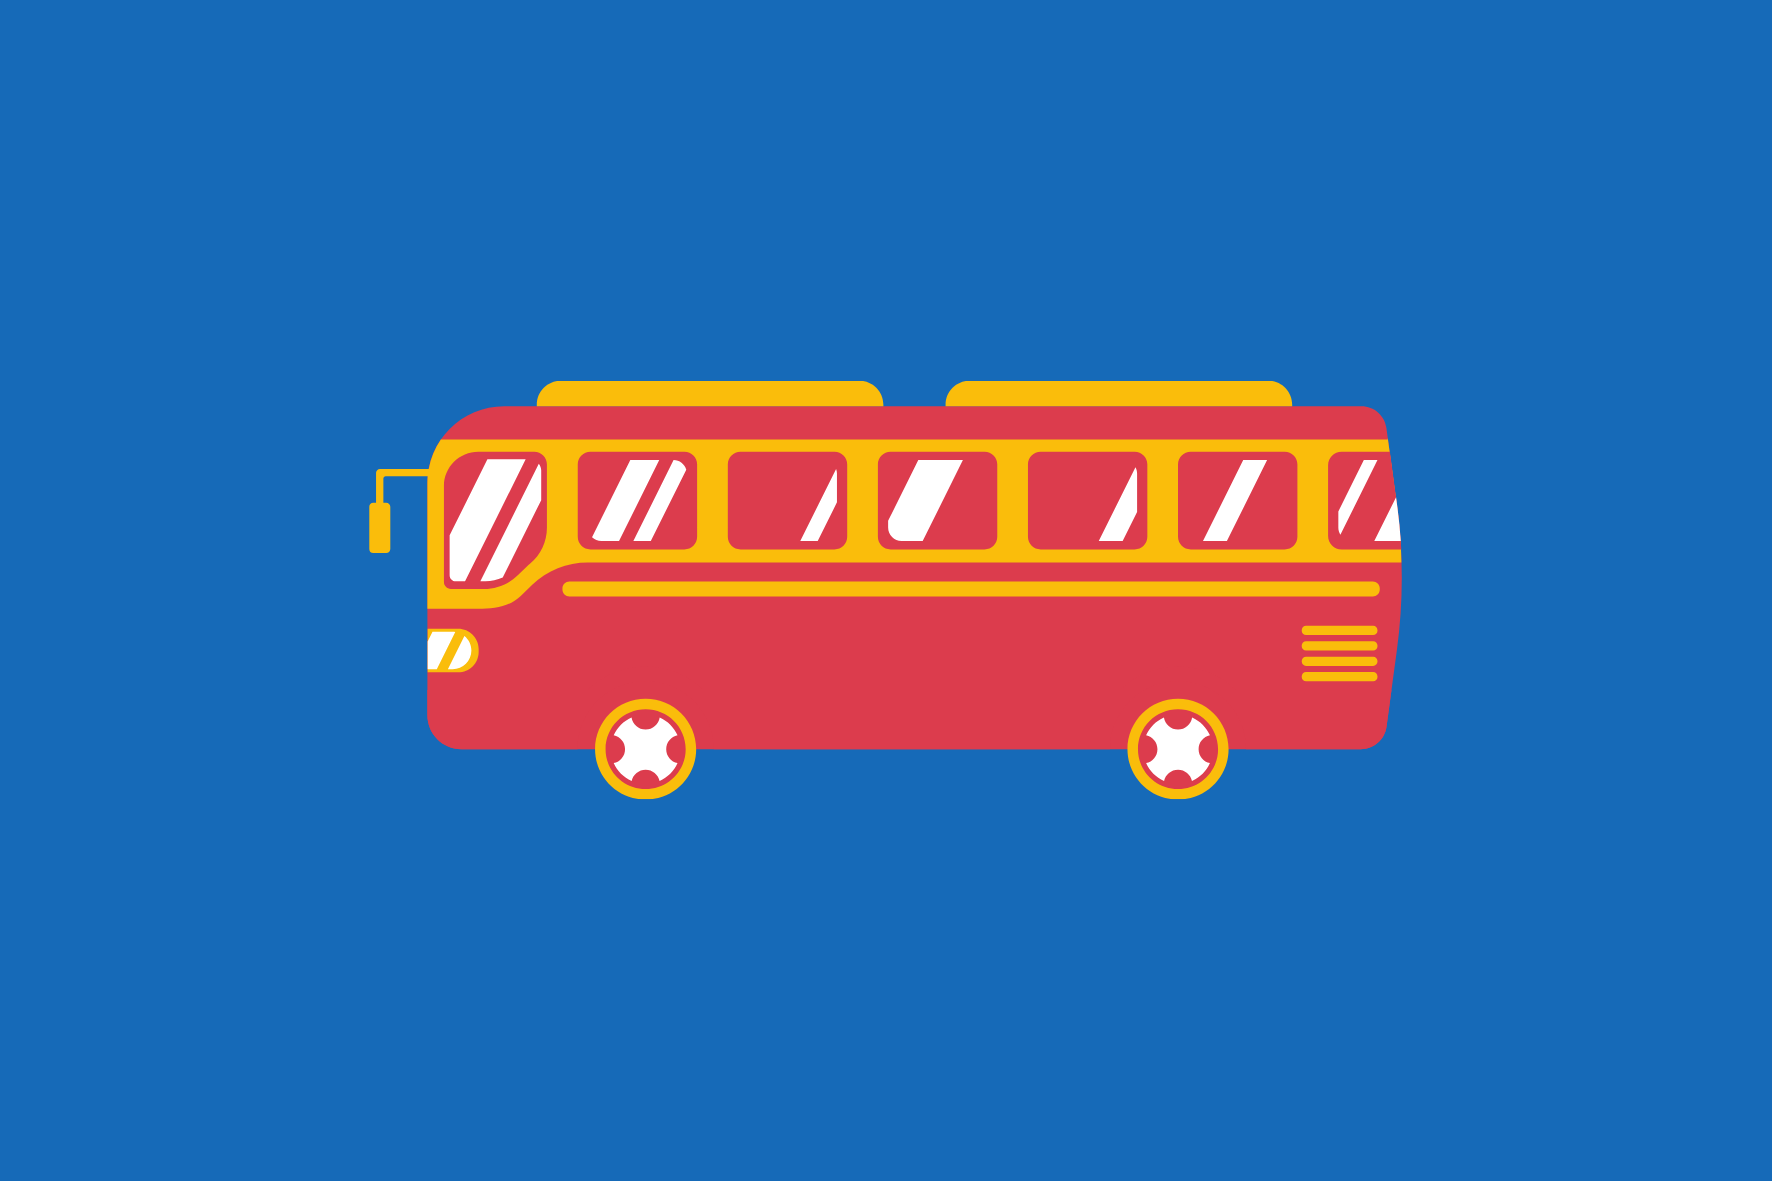 Z dniem 13.09.2021 ulega zmianie rozkład jazdy autobusów linii Nadarzyn – Pruszków.